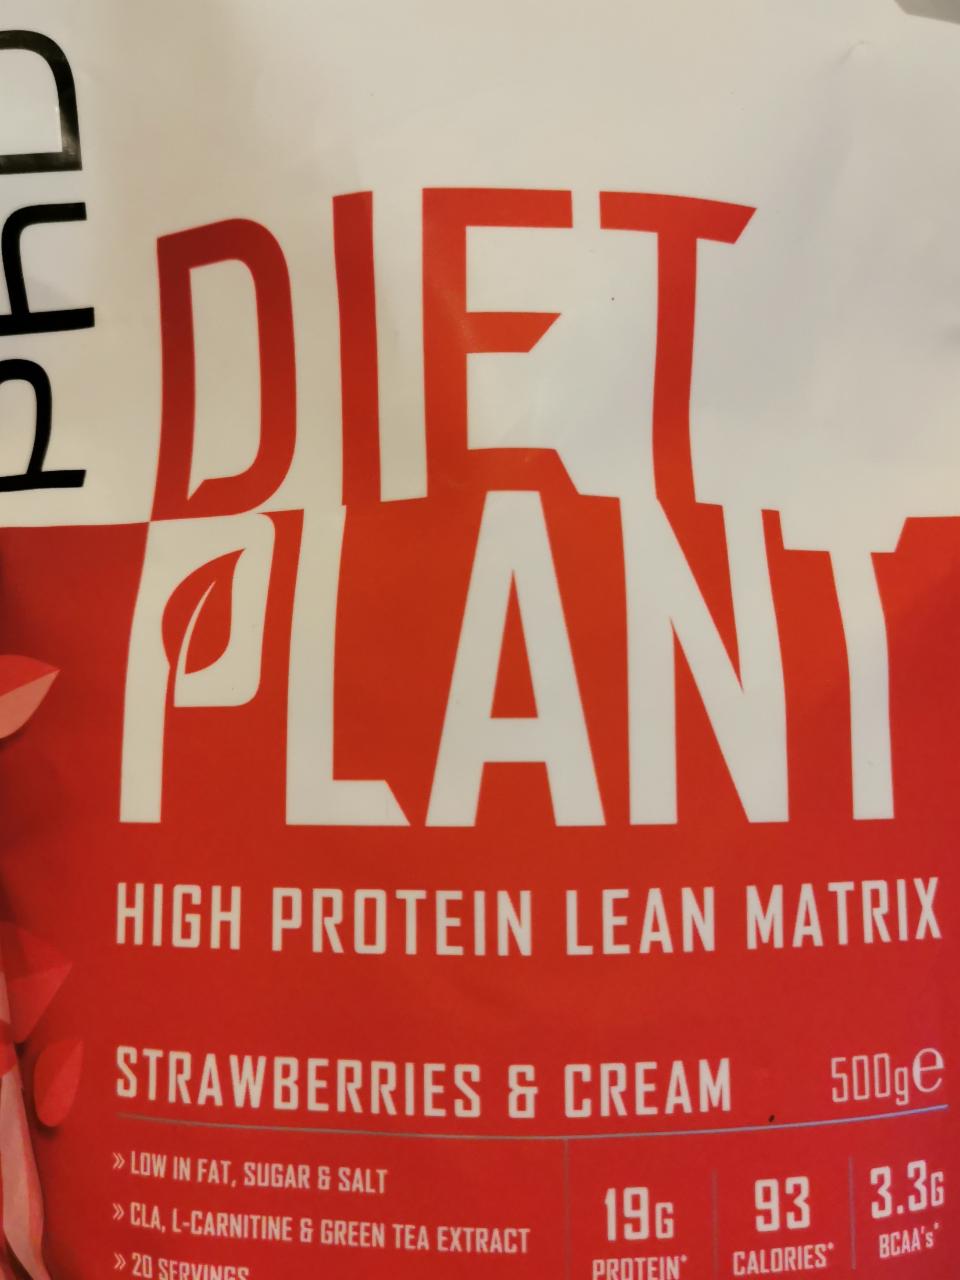 Fotografie - Diet Plant High Protein Lean Matrix Strawberries & Cream PhD